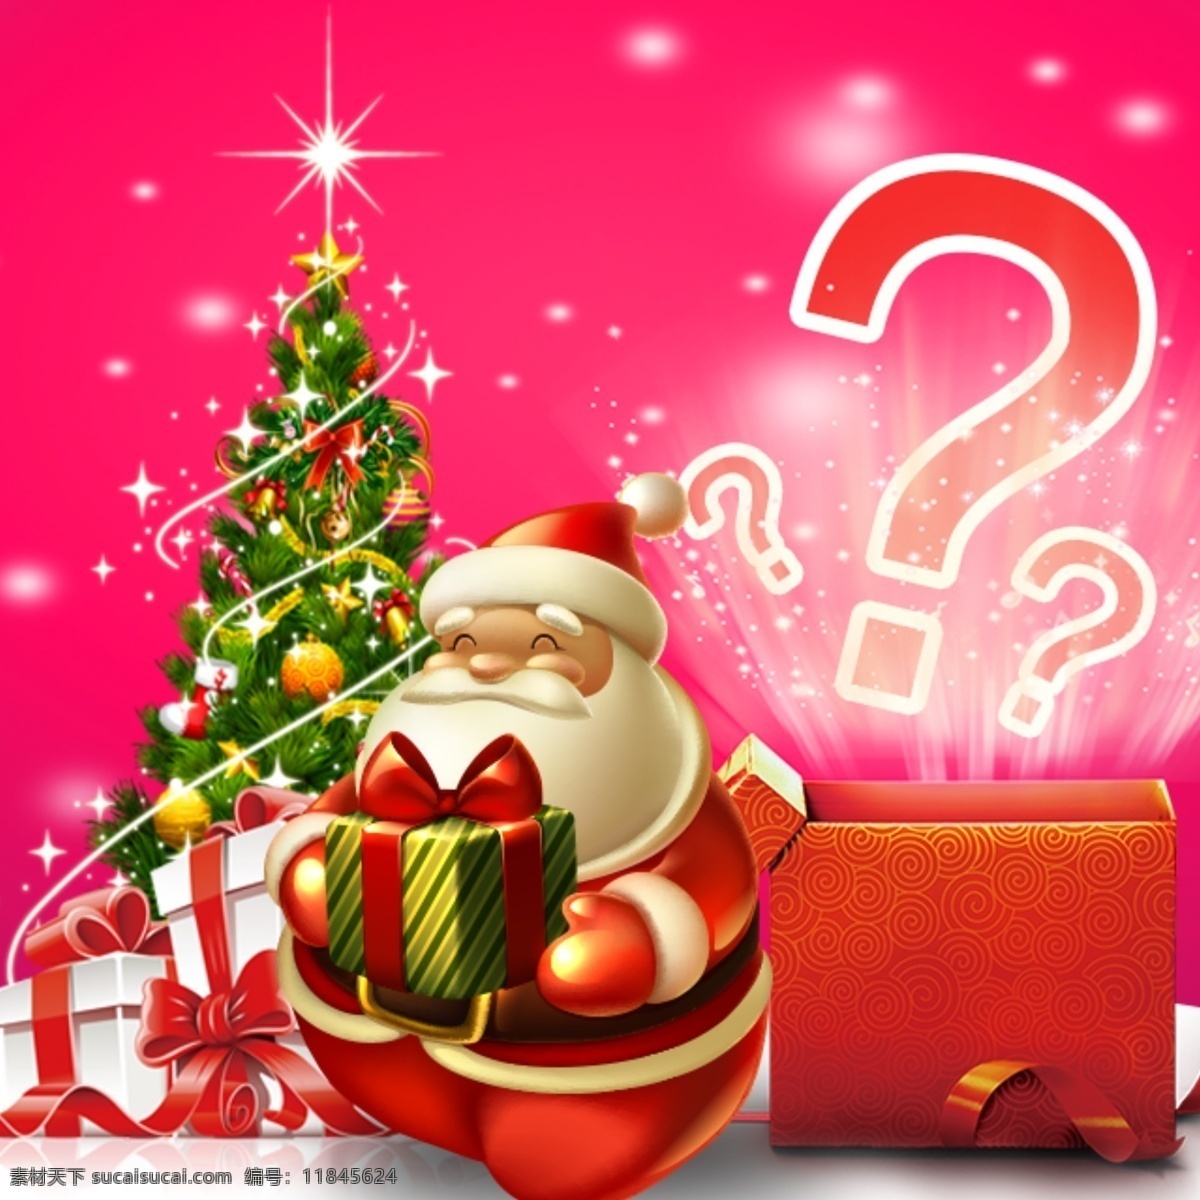 圣诞节 惊喜 箱子 文件下载 圣诞老人 问号箱子 问号 惊喜箱子 圣诞树 礼物 礼物盒 圣诞惊喜 红色背景 雪花